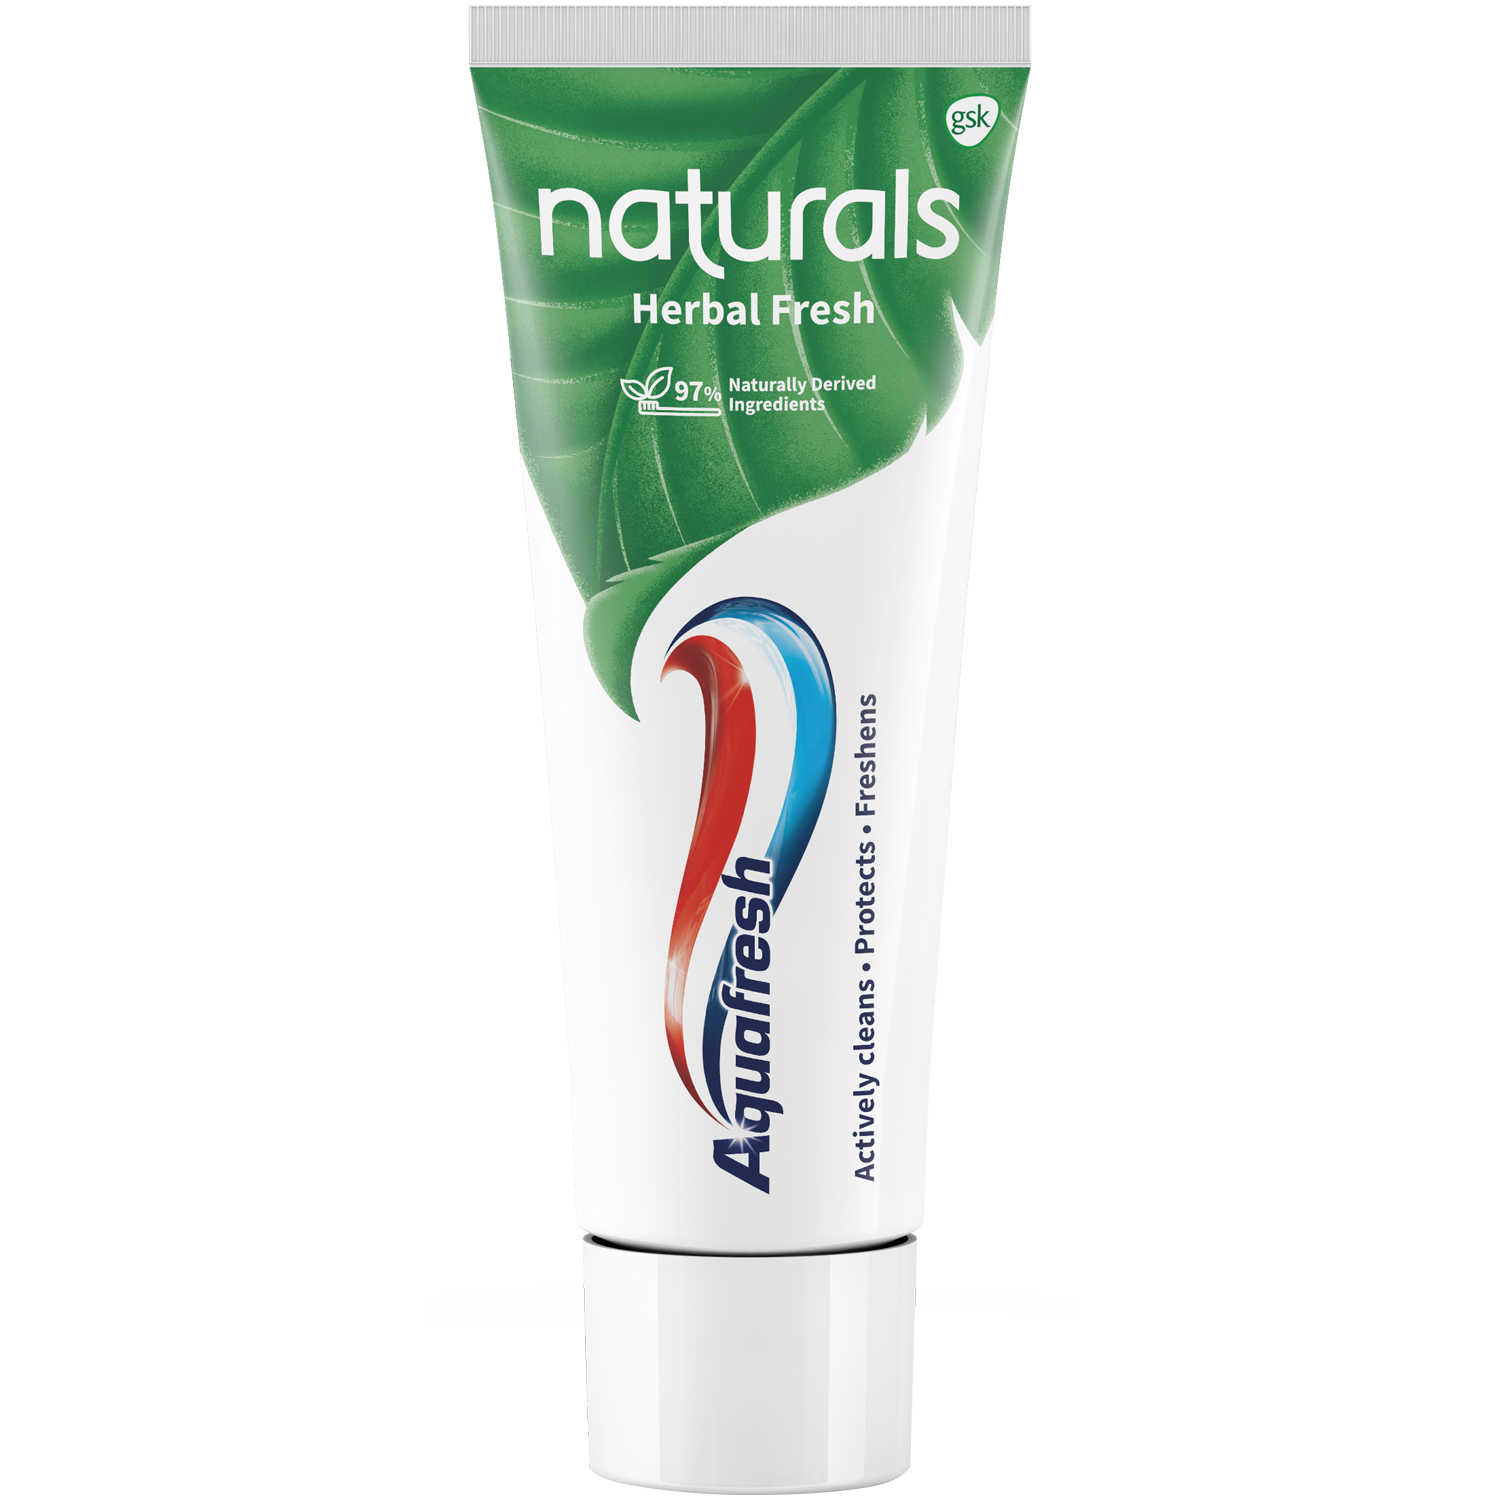 Aquafresh Naturals Mint Clean зубная паста, 75 мл